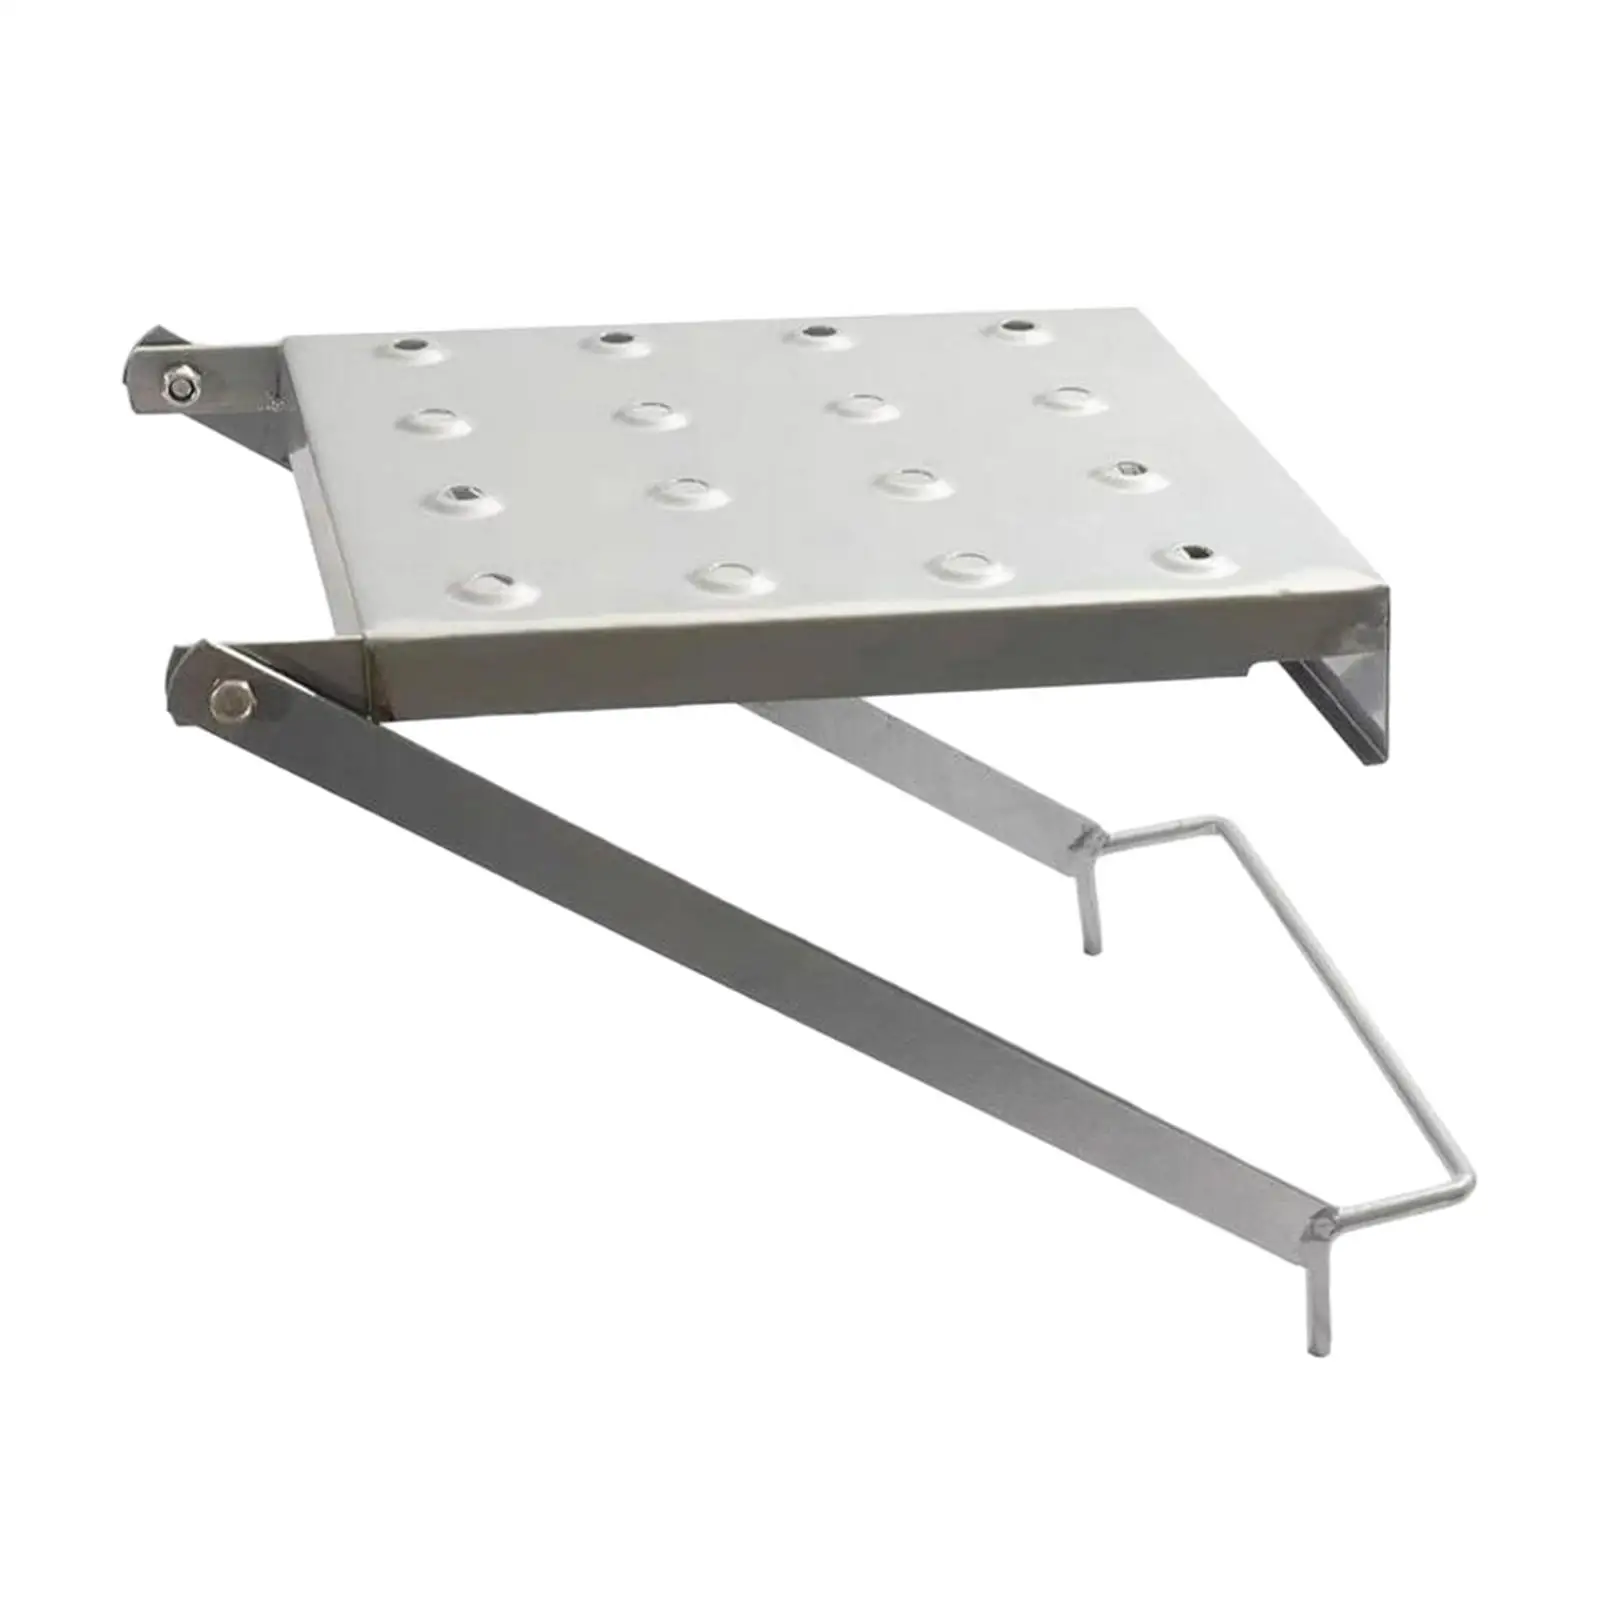 Ladder Work Platform Sturdy Practical Heavy Duty Storage Platform Multifunction for Outdoor Working Indoor Kitchen Tools Hold